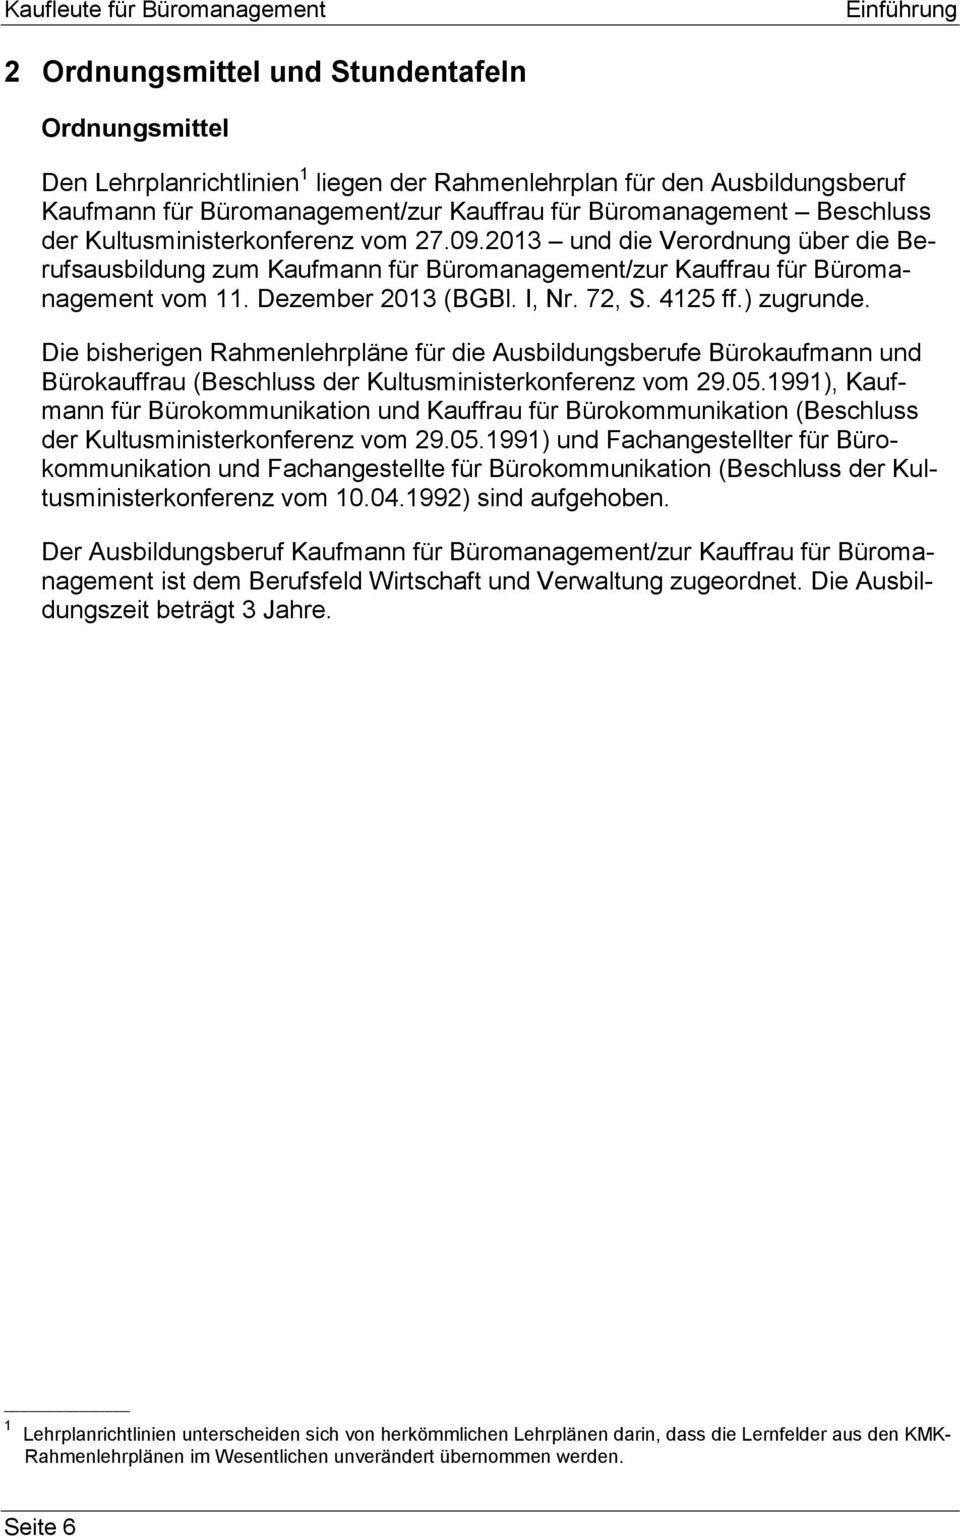 Dezember 2013 (BGBl. I, Nr. 72, S. 4125 ff.) zugrunde. Die bisherigen Rahmenlehrpläne für die Ausbildungsberufe Bürokaufmann und Bürokauffrau (Beschluss der Kultusministerkonferenz vom 29.05.